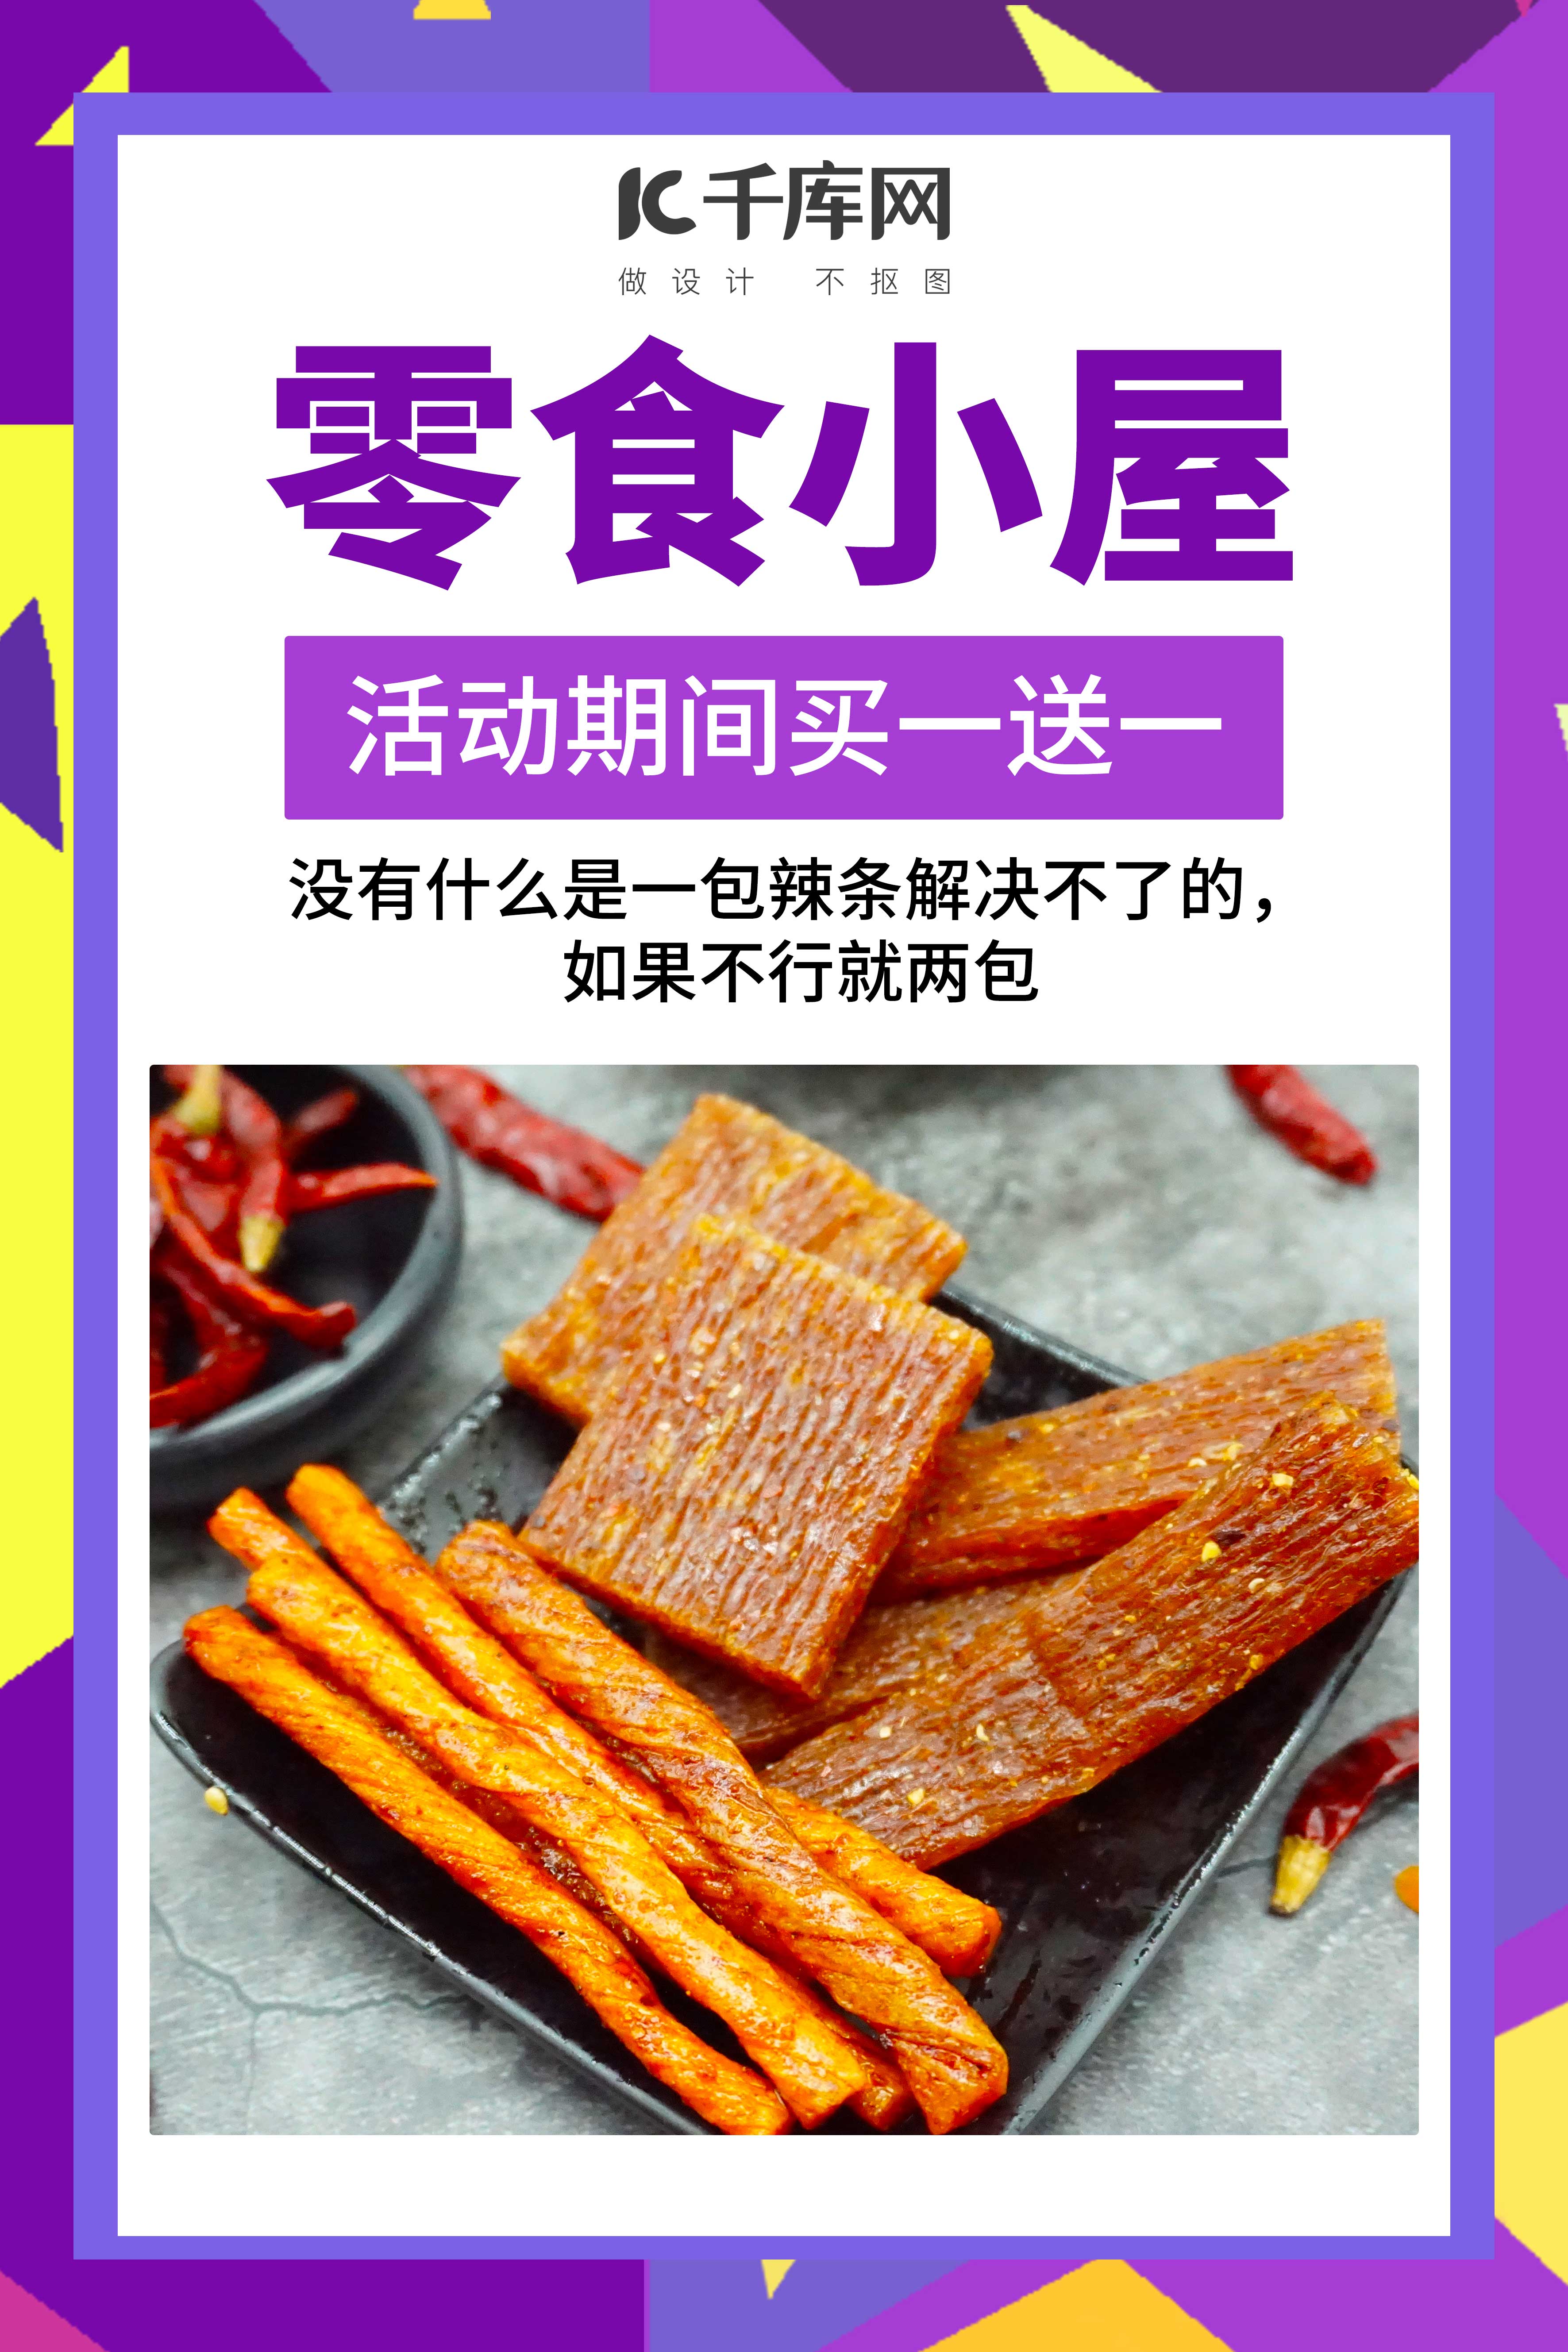 《中国食辣史》写给爱吃辣人群的一本书！ - 哔哩哔哩